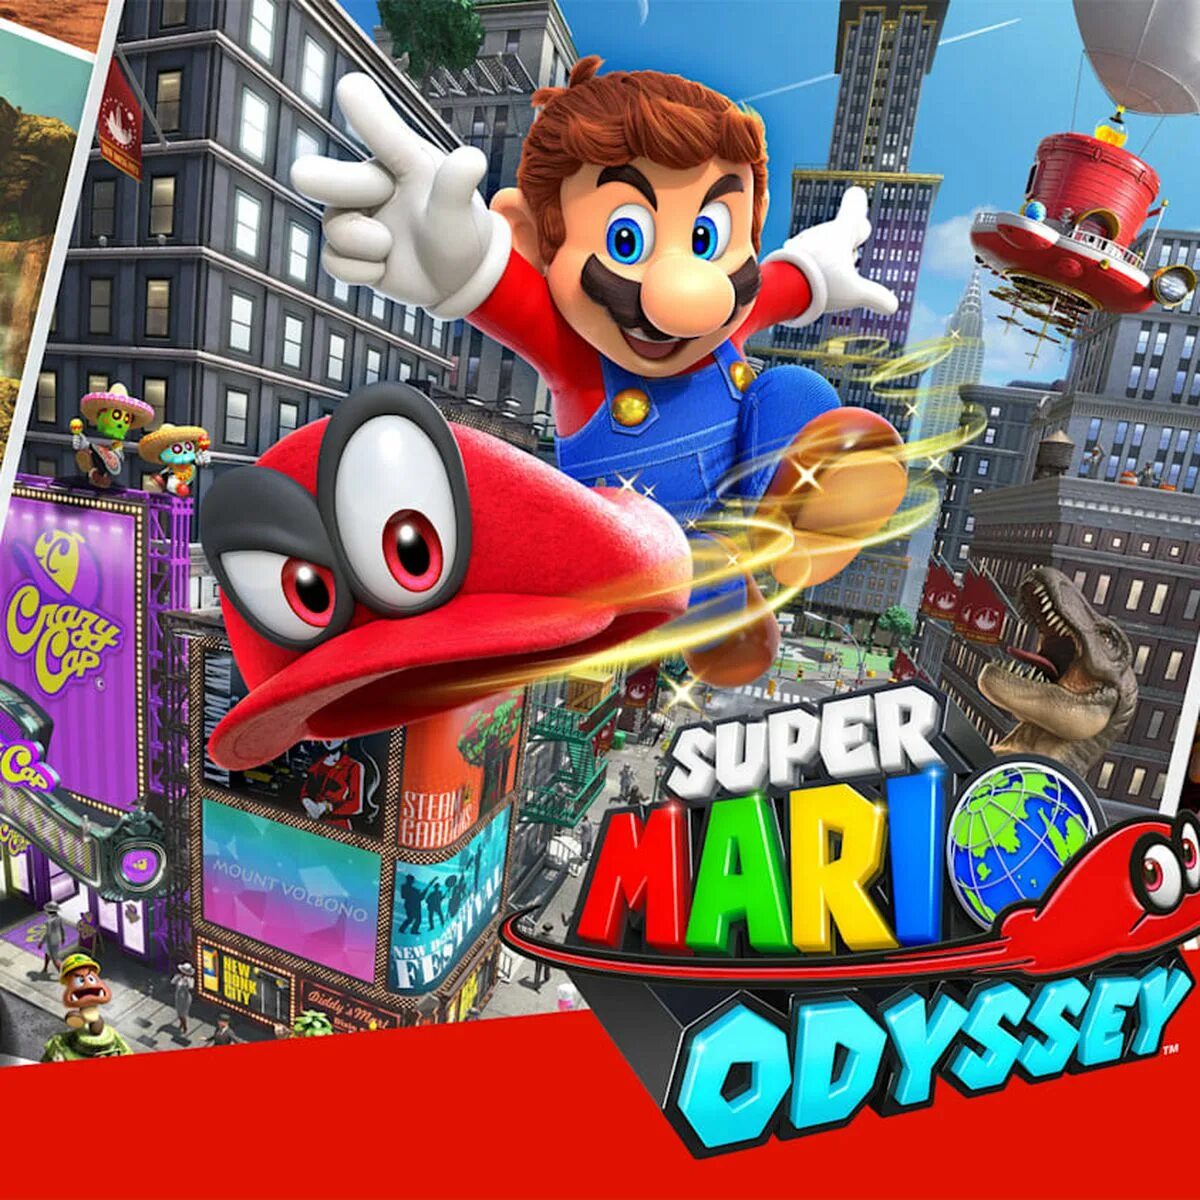 Марио одиссей играть. Super Mario Odyssey Nintendo Switch. Супер Марио Одиссей на Нинтендо. Mario Odyssey Xbox 360. Супер Марио Одиссей Поваруша.